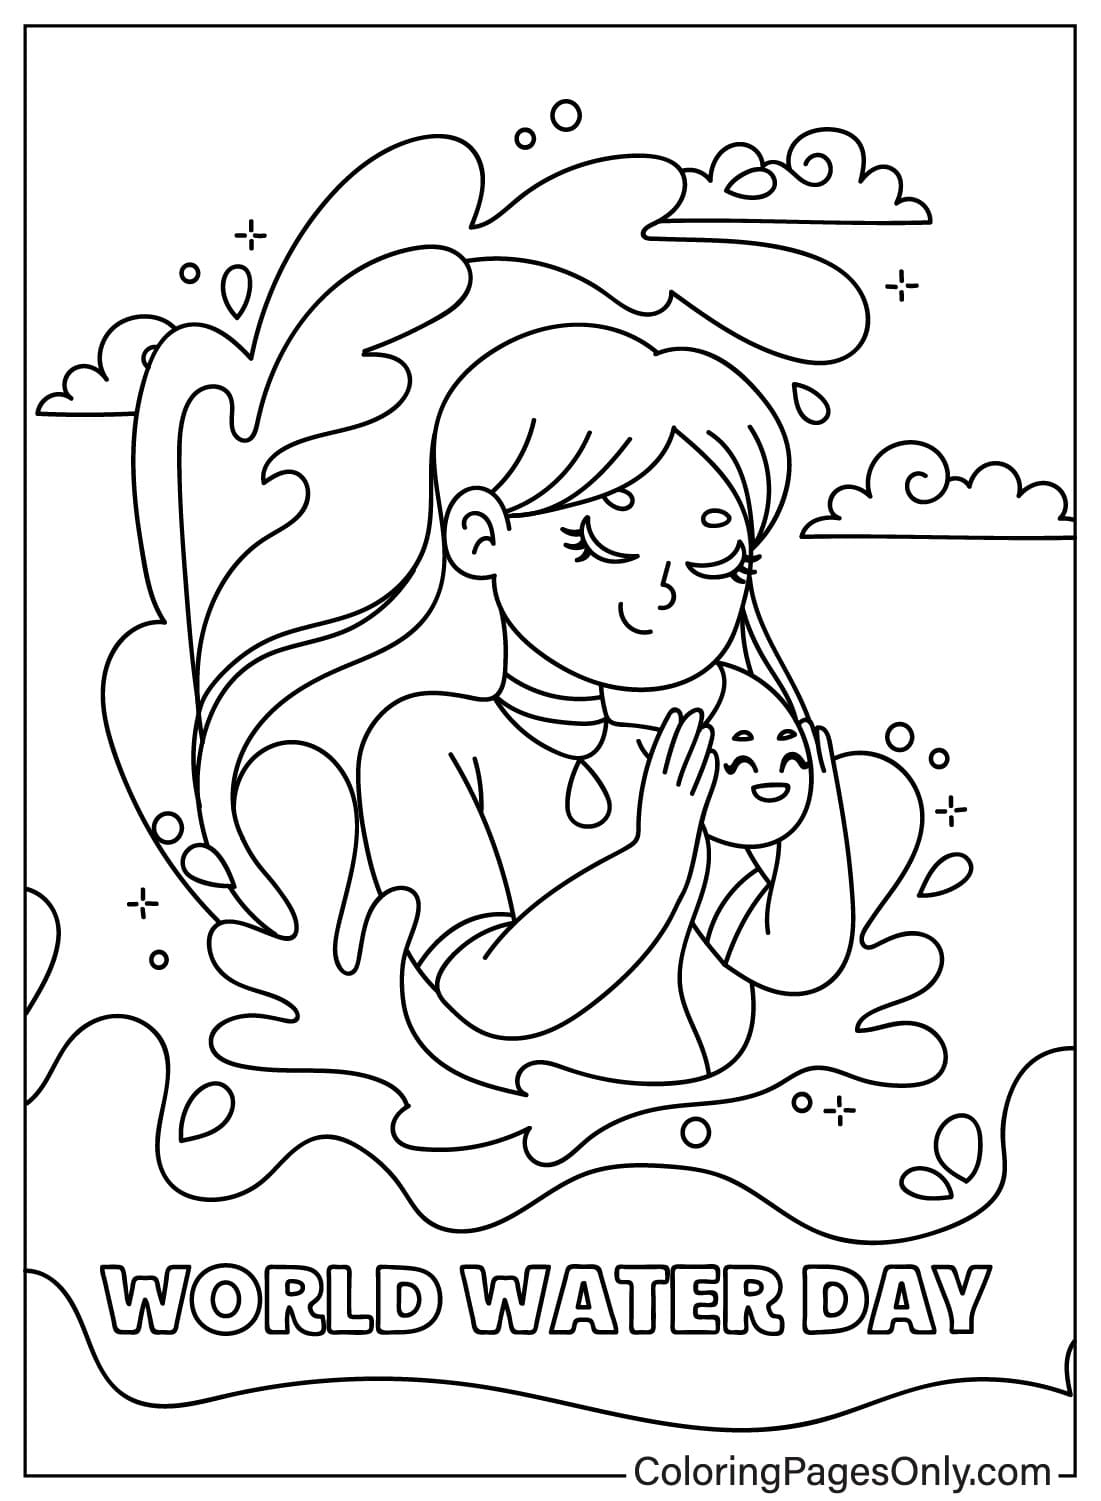 صور صفحة التلوين ليوم المياه العالمي من يوم المياه العالمي